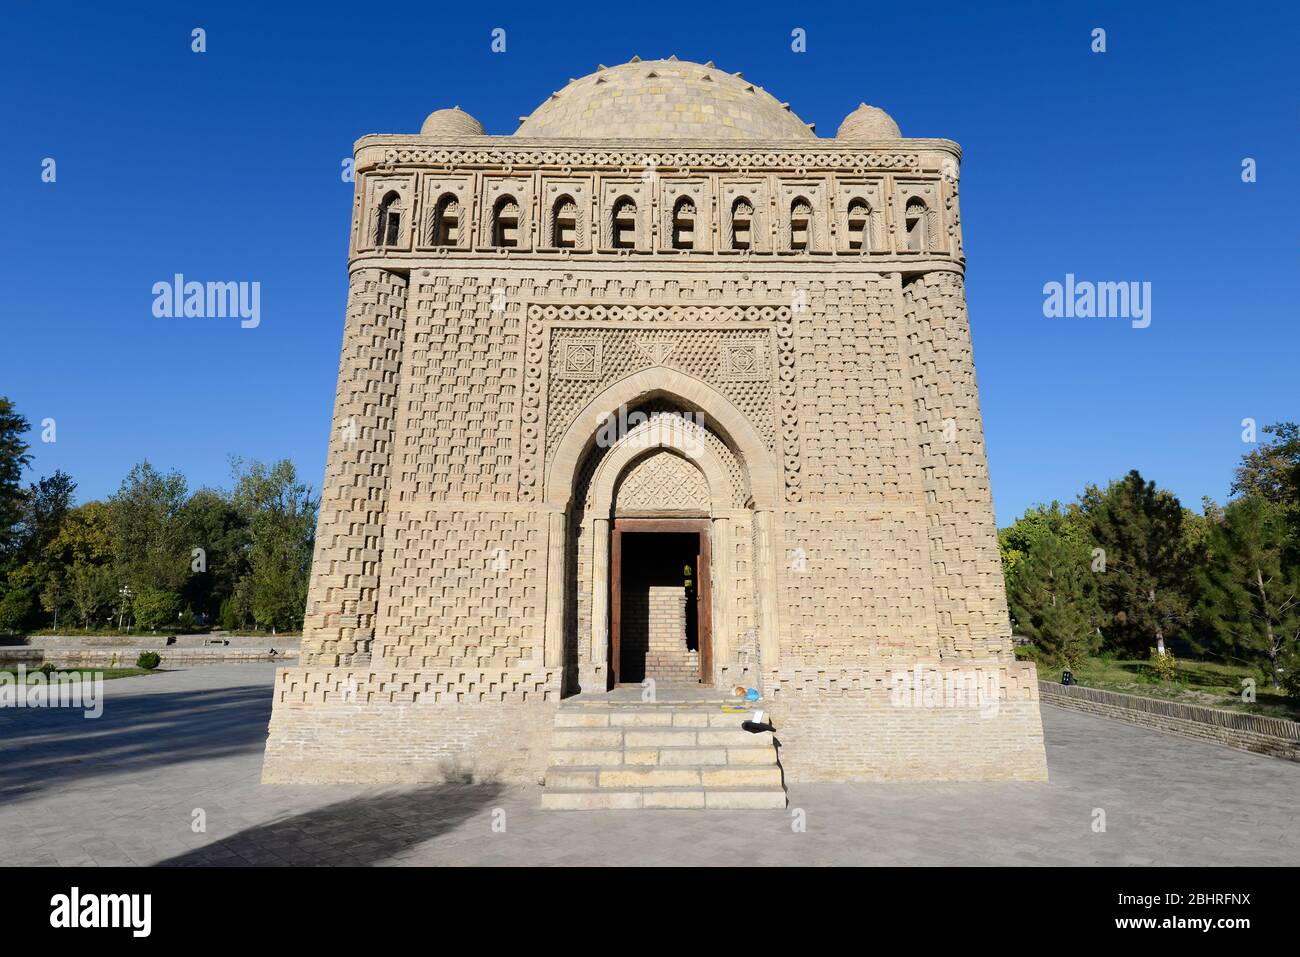 Mausoleo de Samanid en Bujara, Uzbekistán. Ejemplo emblemático de la arquitectura islámica temprana en Asia. Edificio funerario más antiguo de Asia Central. Foto de stock